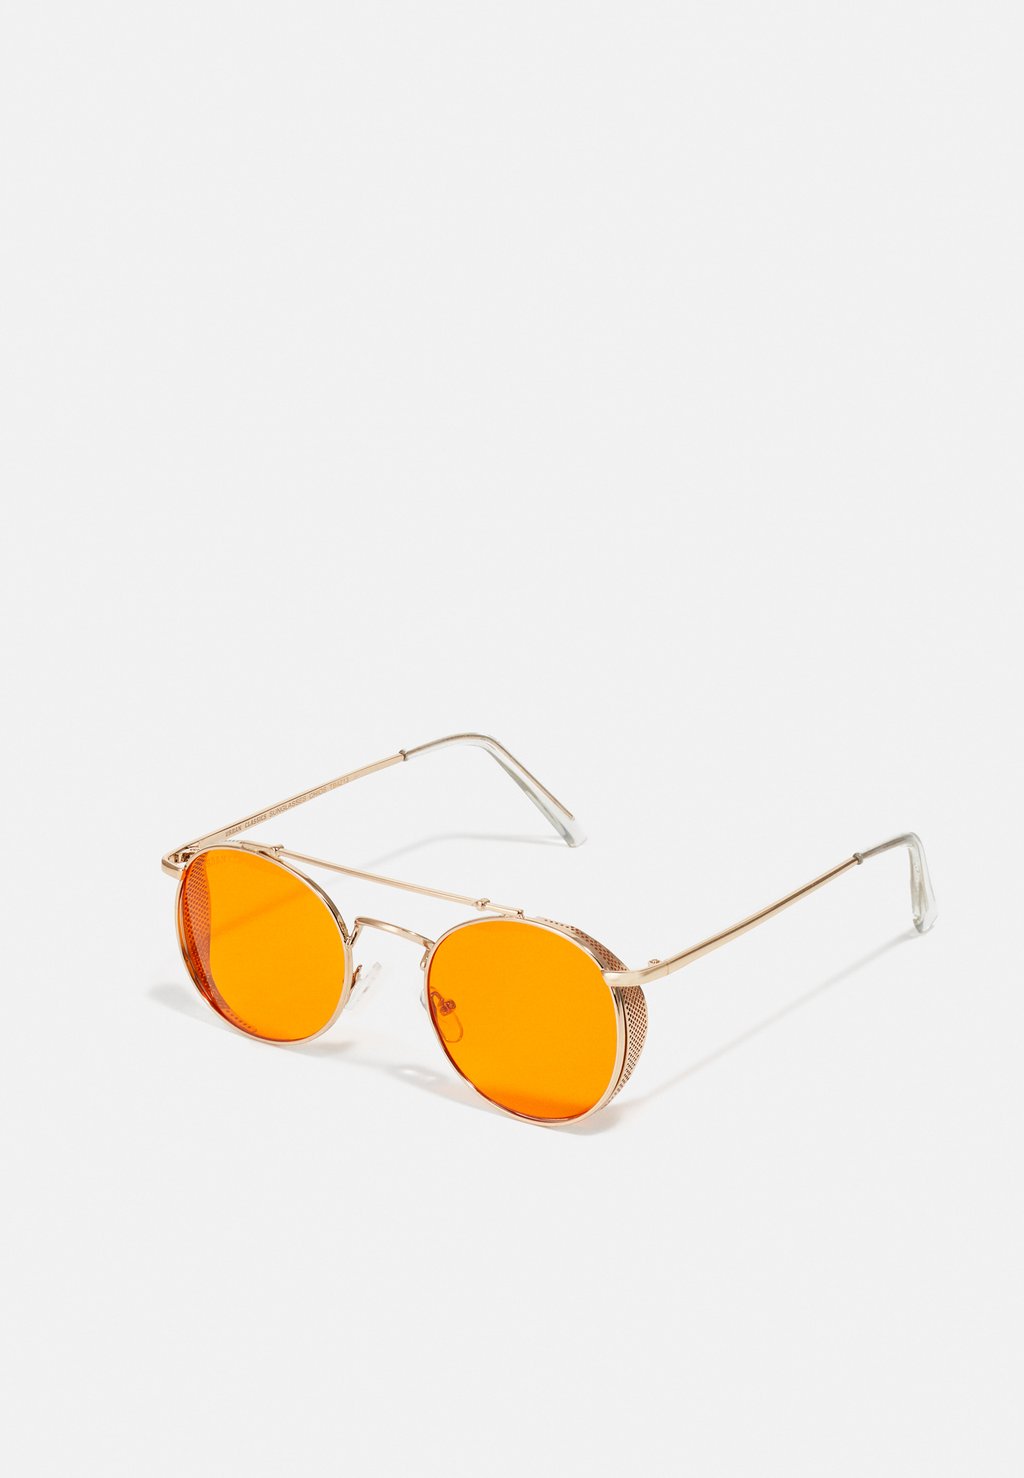 gammarus amphipod orange gold 12 Солнцезащитные очки SUNGLASSES CHIOS UNISEX Urban Classics, цвет gold-coloured/orange